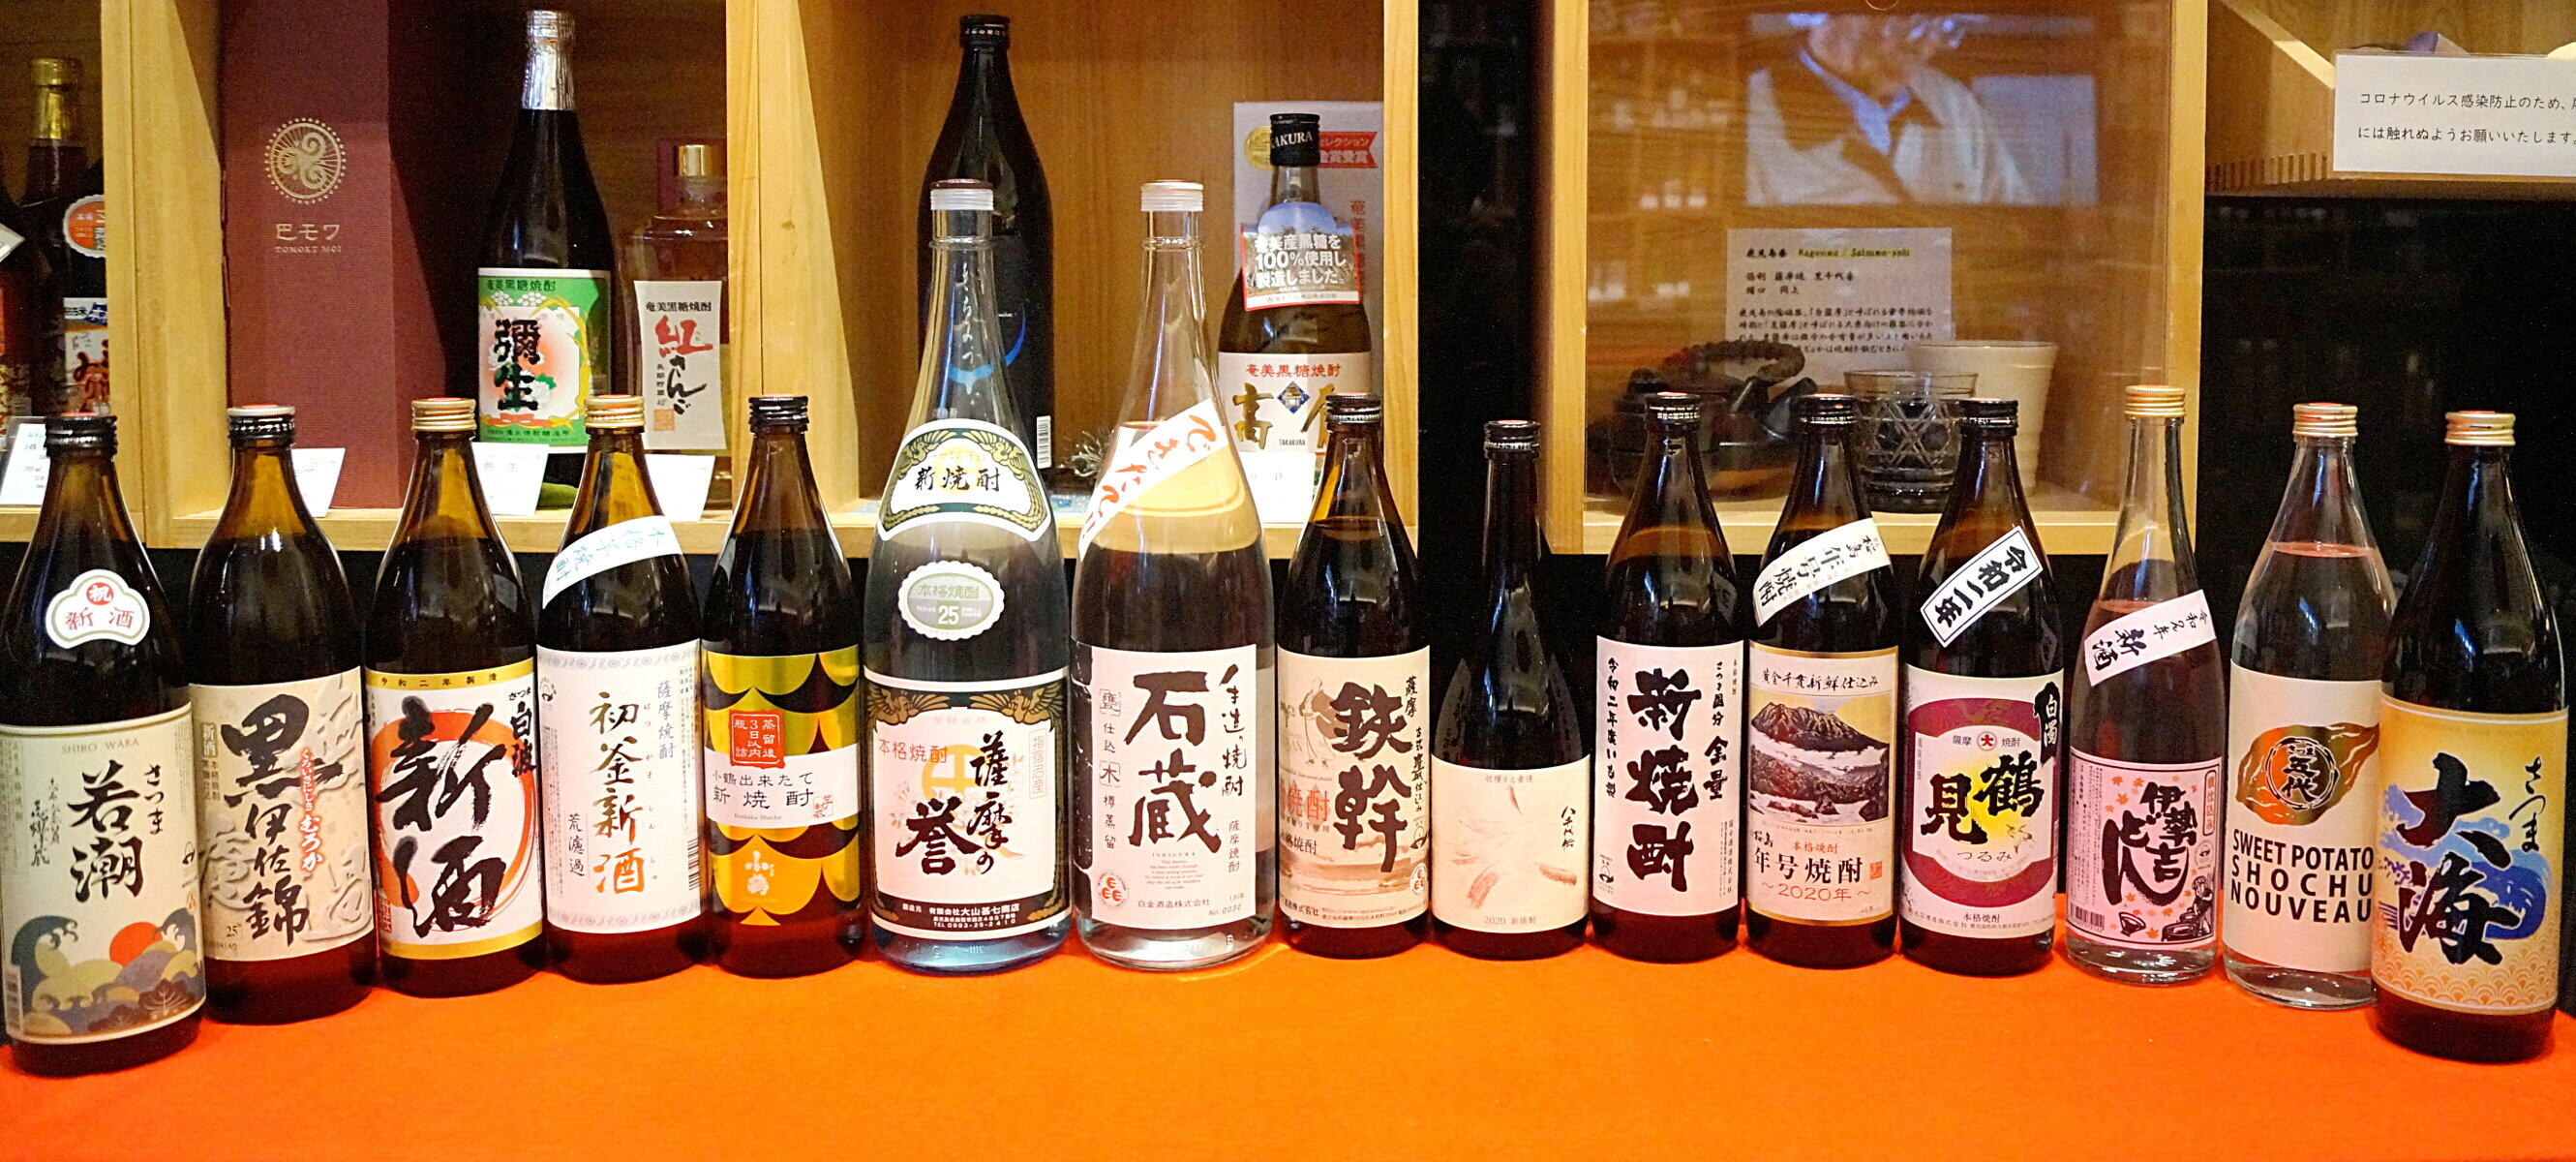 薩摩焼酎を中心とした「旬の新酒」全15種